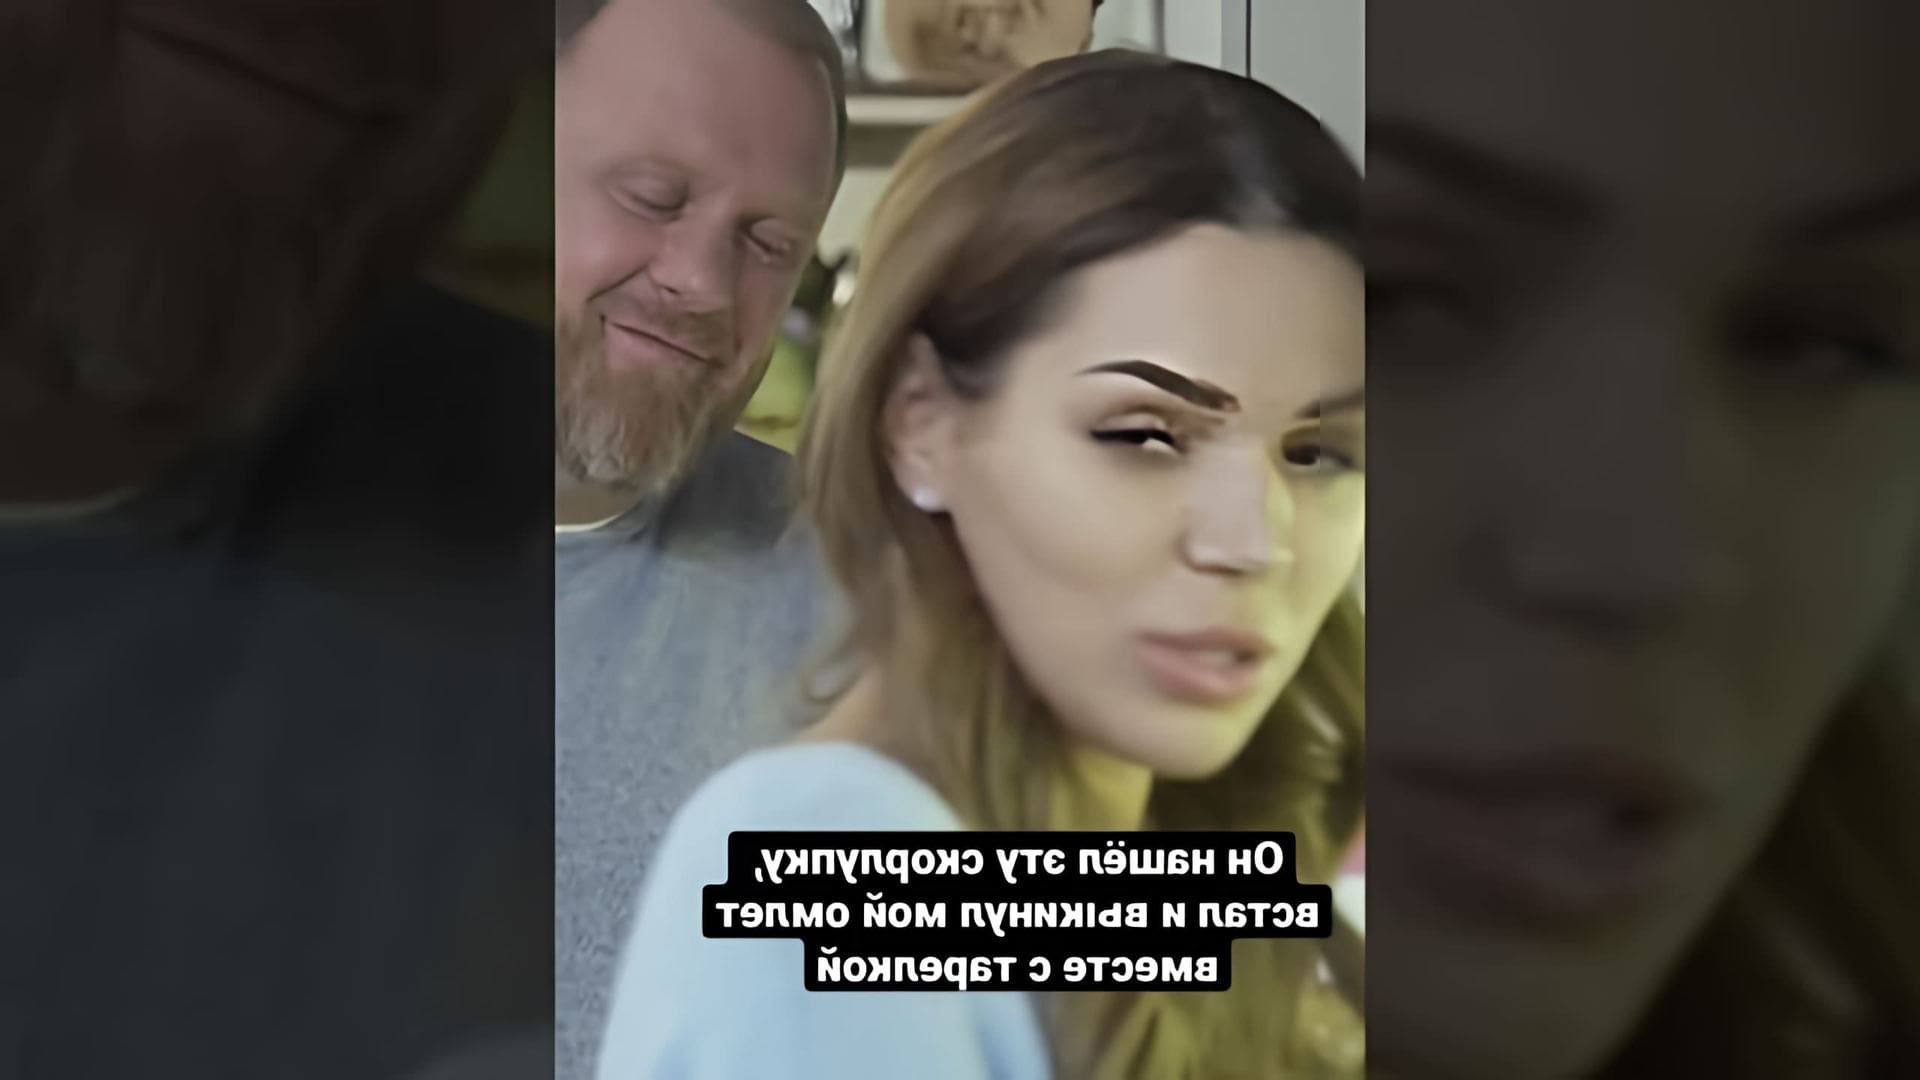 В этом видео Константин Ивлев рассказывает о том, как он приготовил у кости омлет утром и в него попала скорлупка, которая разбилась и не была замечена